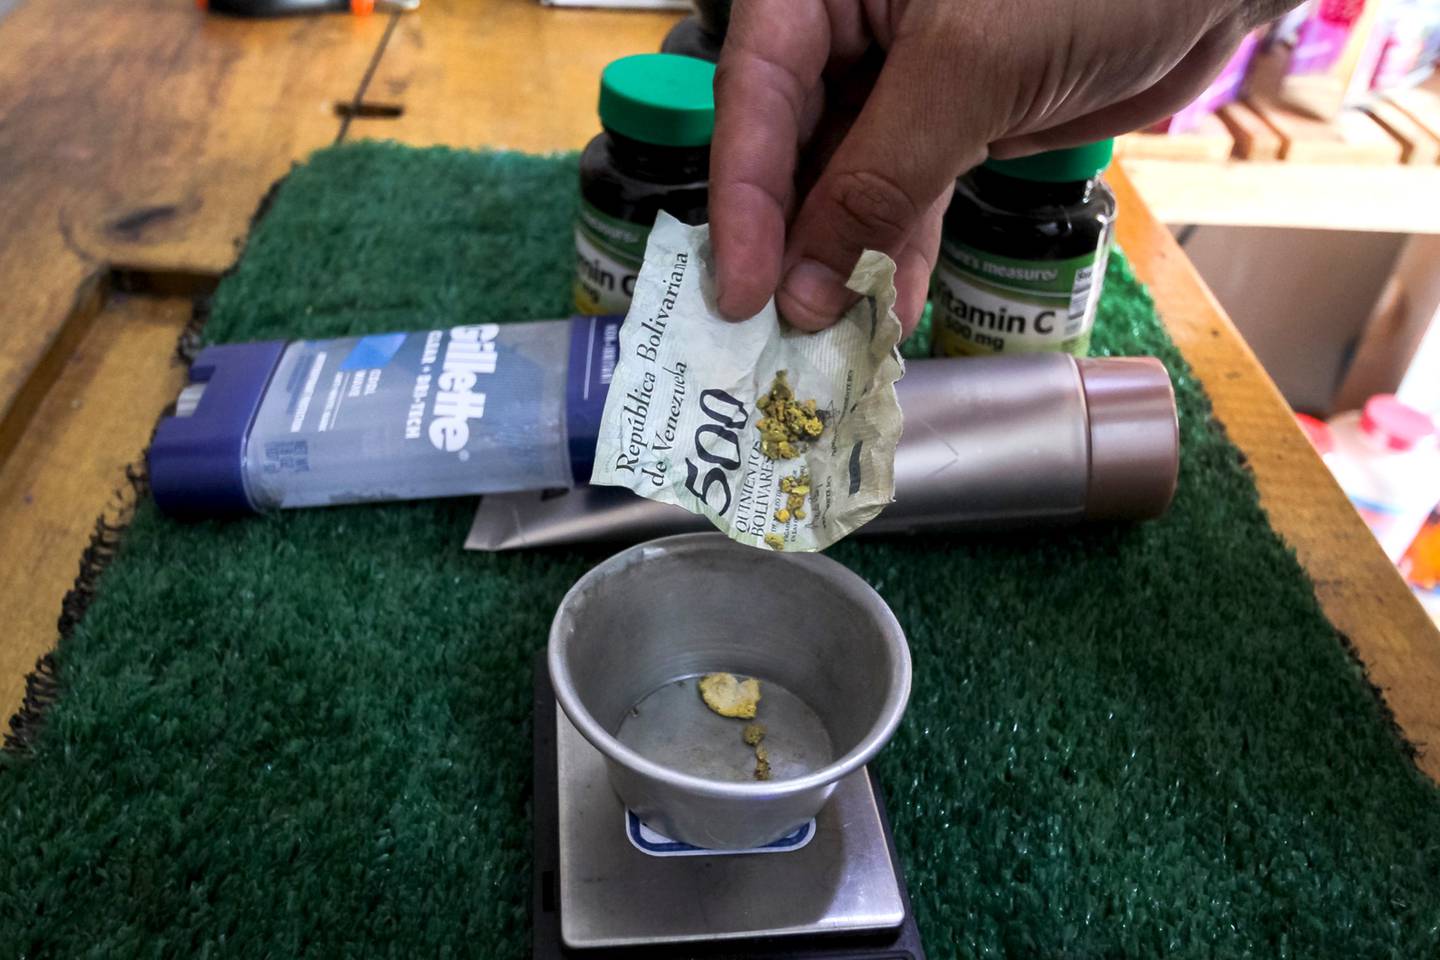 Cliente coloca ouro embrulhado em uma nota de bolívar amassada em uma balança para pagamento em uma farmácia em Tumeremo, dfd